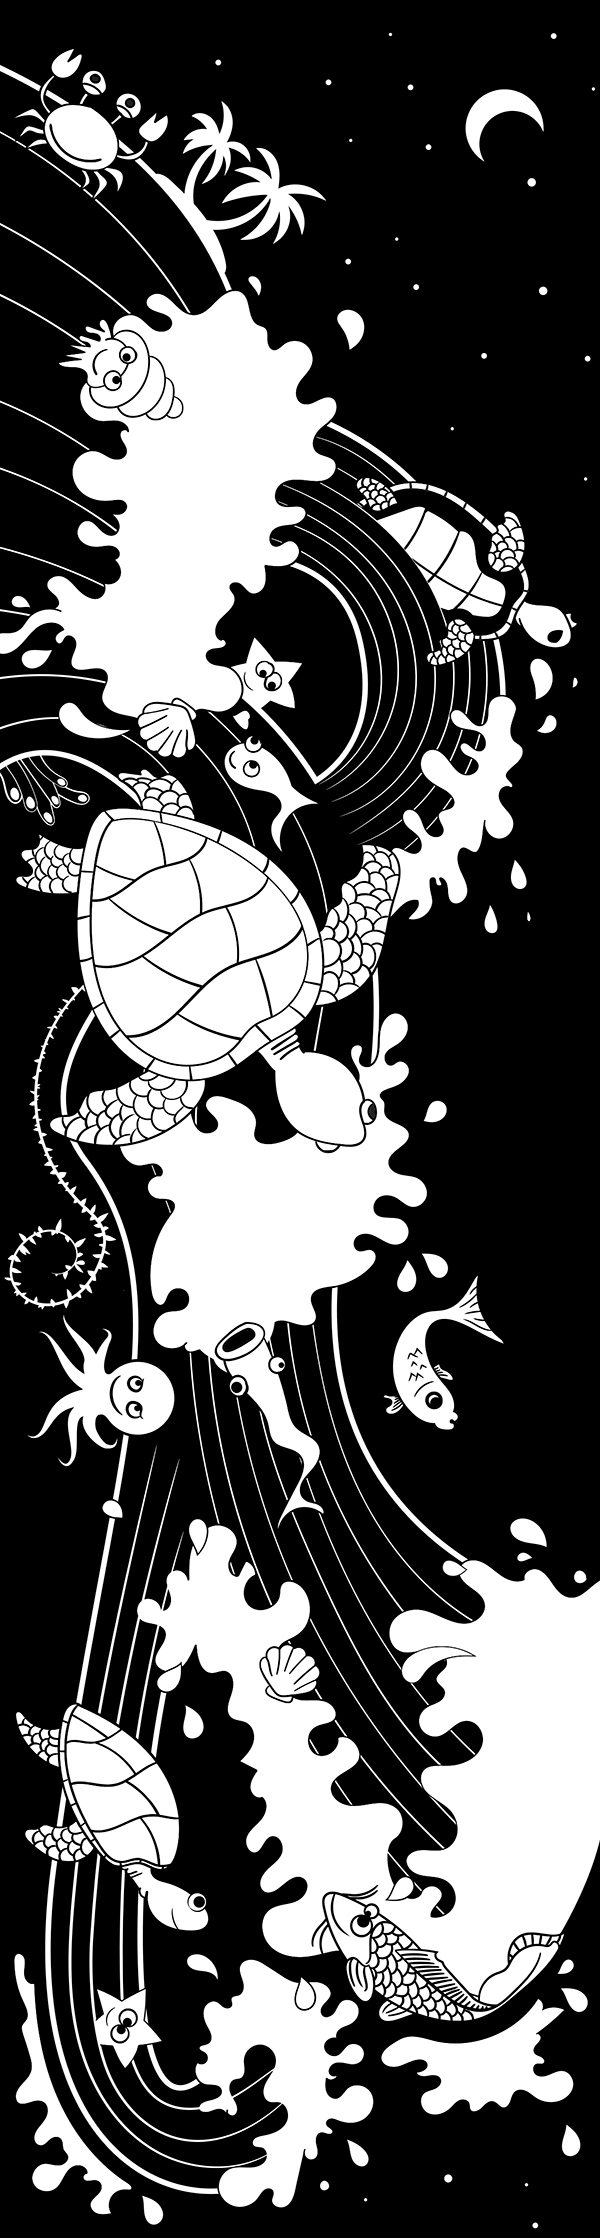 cutoutthedarkness2014 COTD panasonic sea paper cutout Turtles  luminary zoo